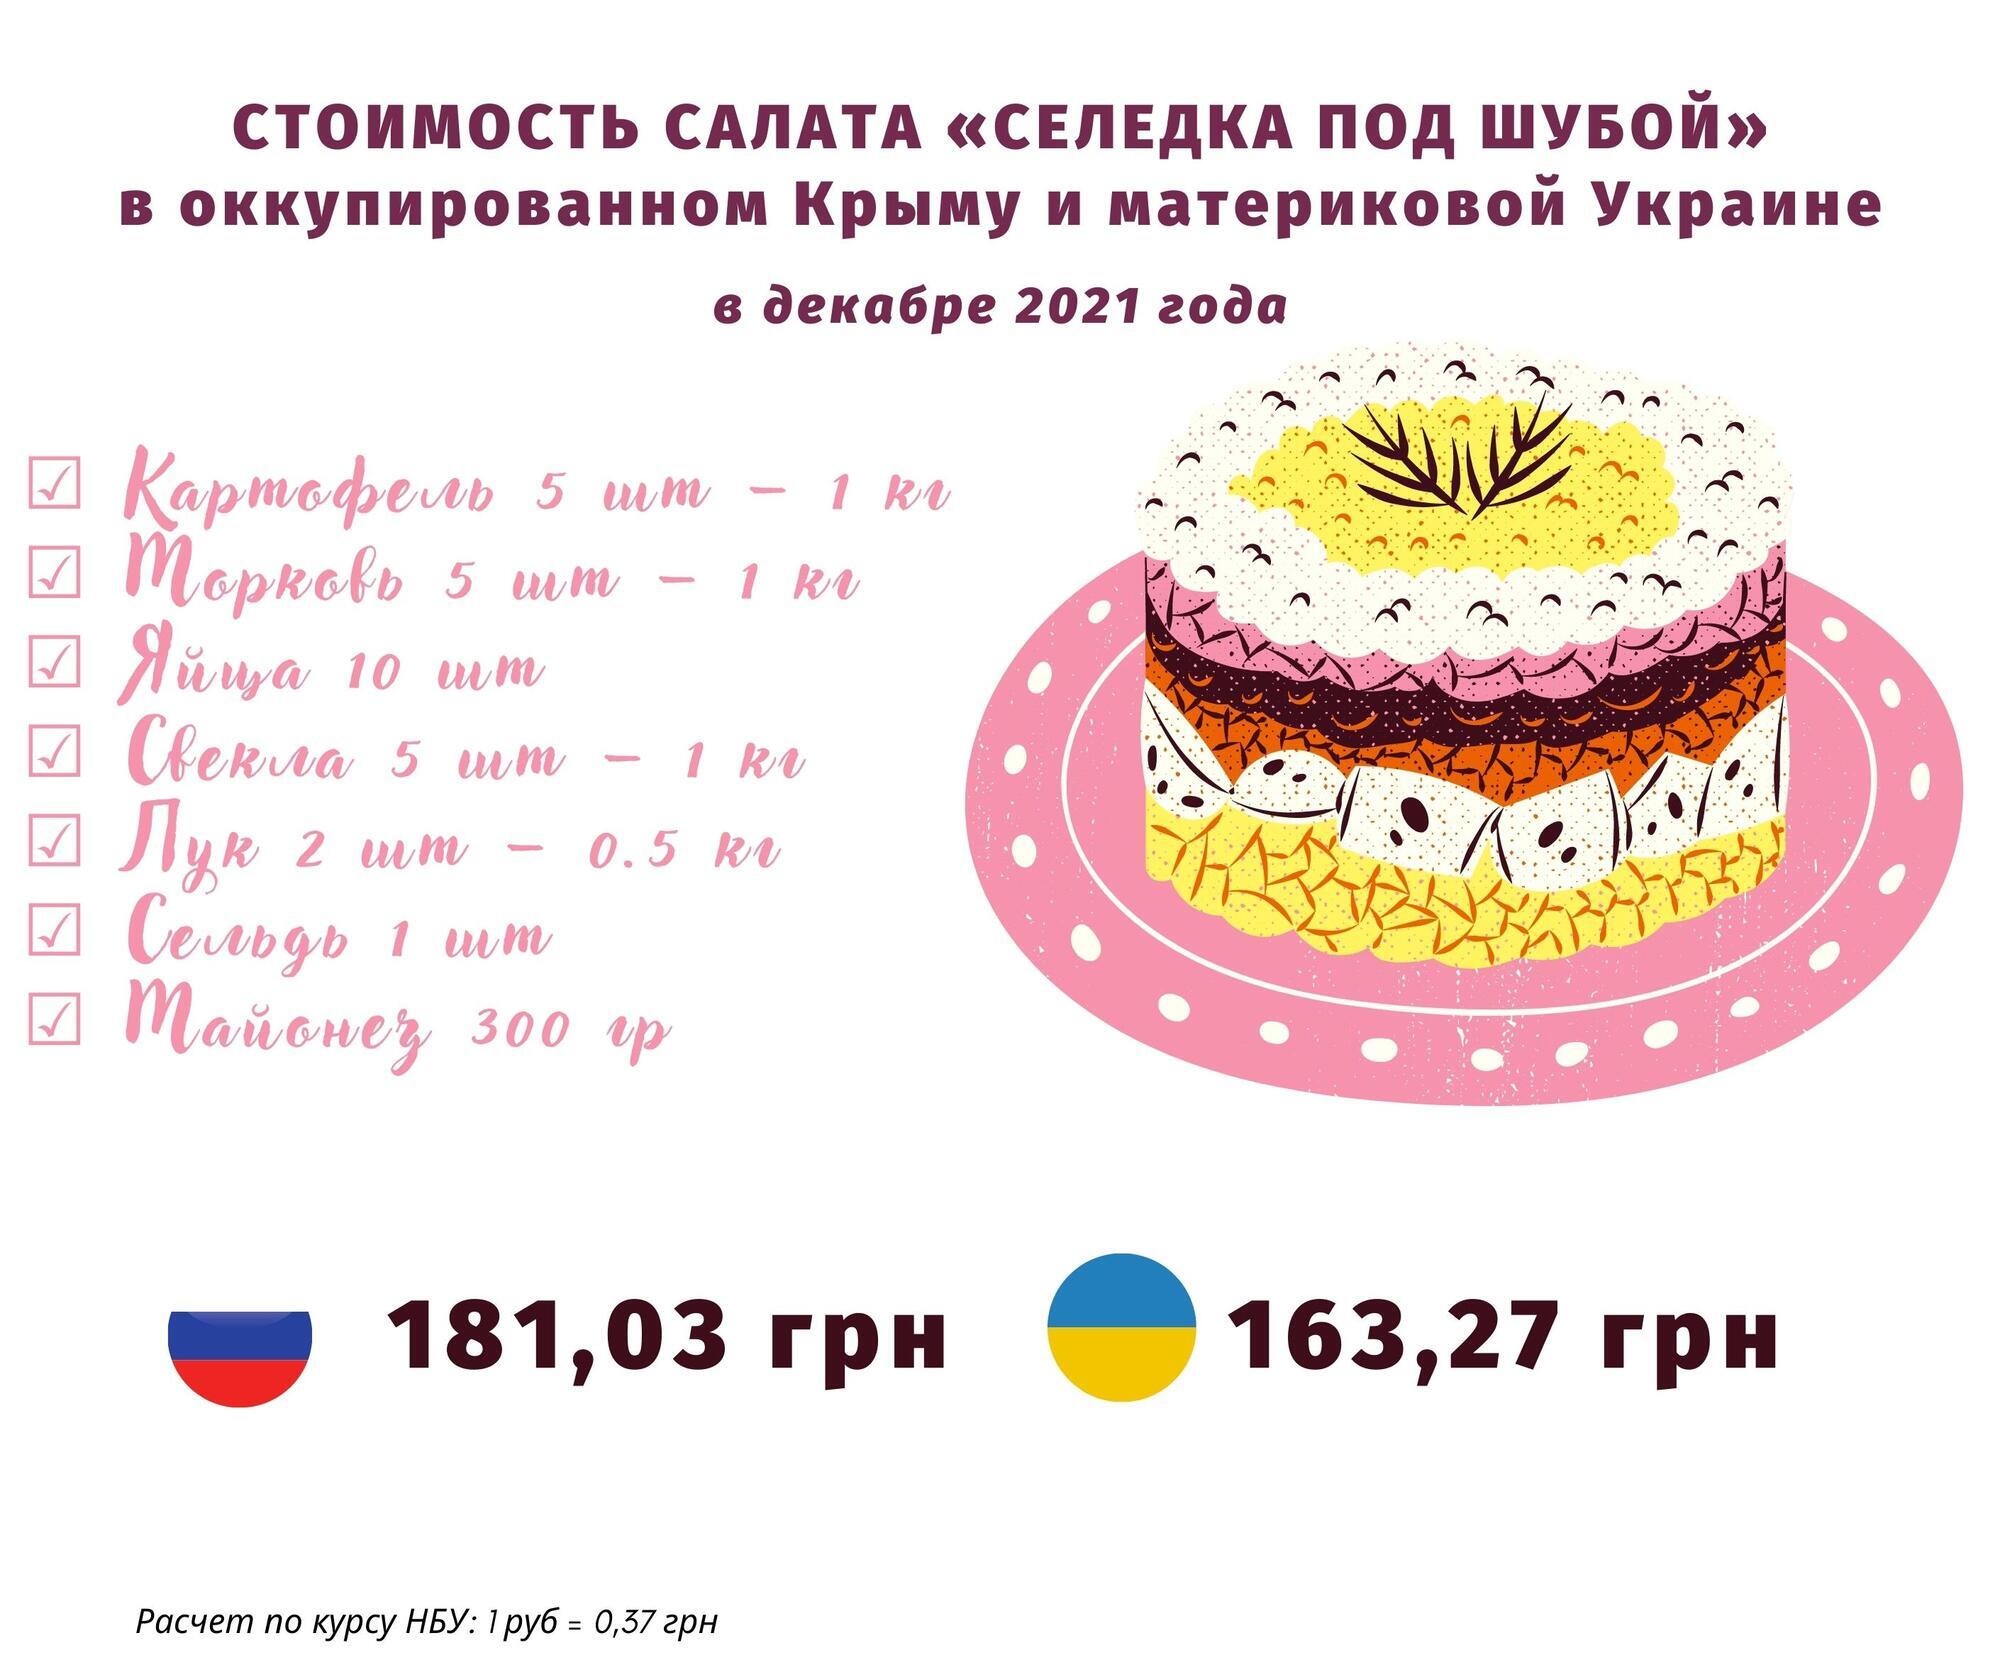 Полный произвол и цены выше, чем в Москве: крымчане жалуются на оккупантов из-за подорожания. Инфографика